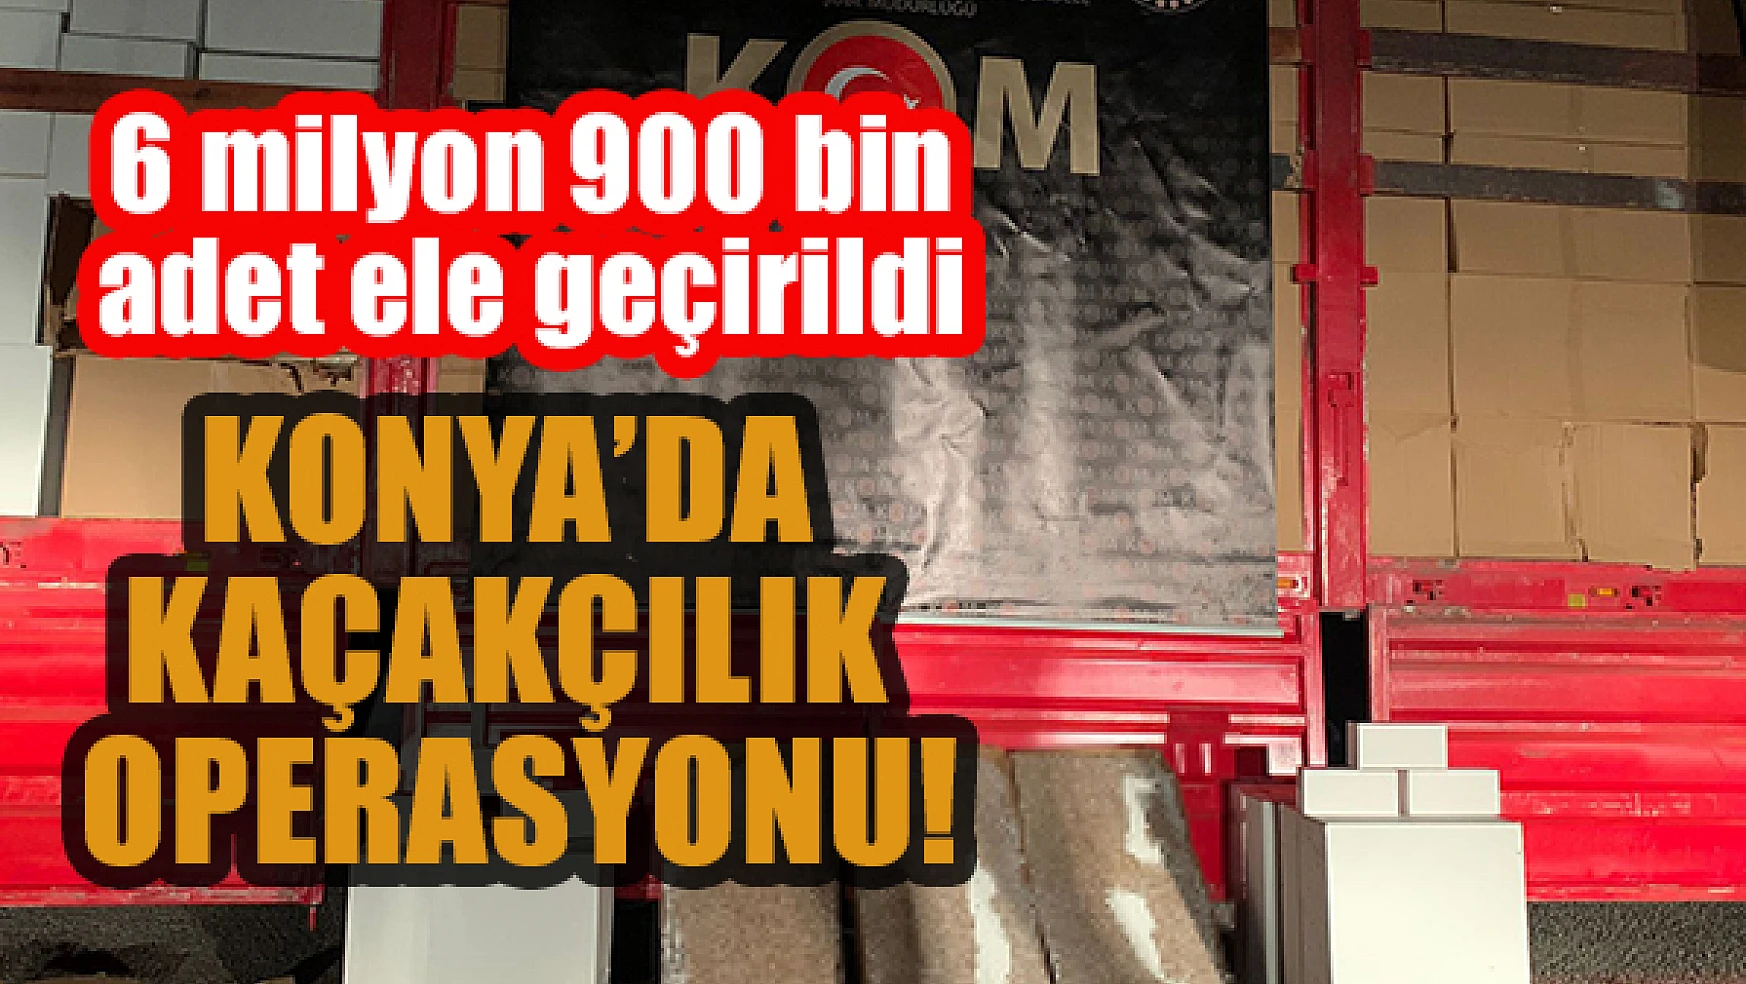 Konya'da kaçakçılık operasyonu:  6 milyon 900 bin adet ele geçirildi